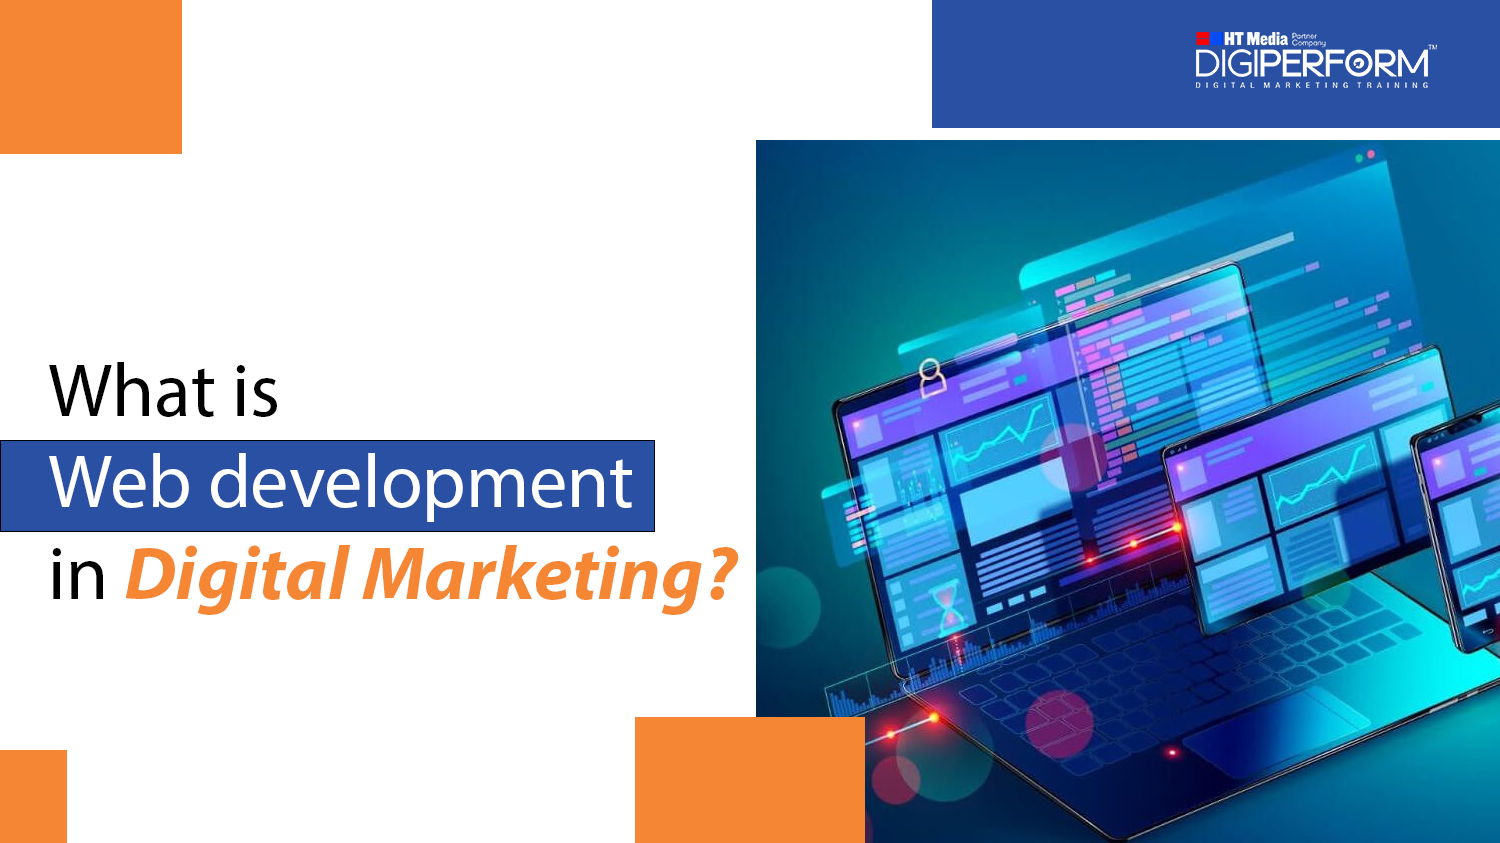 What is web development in digital marketing?